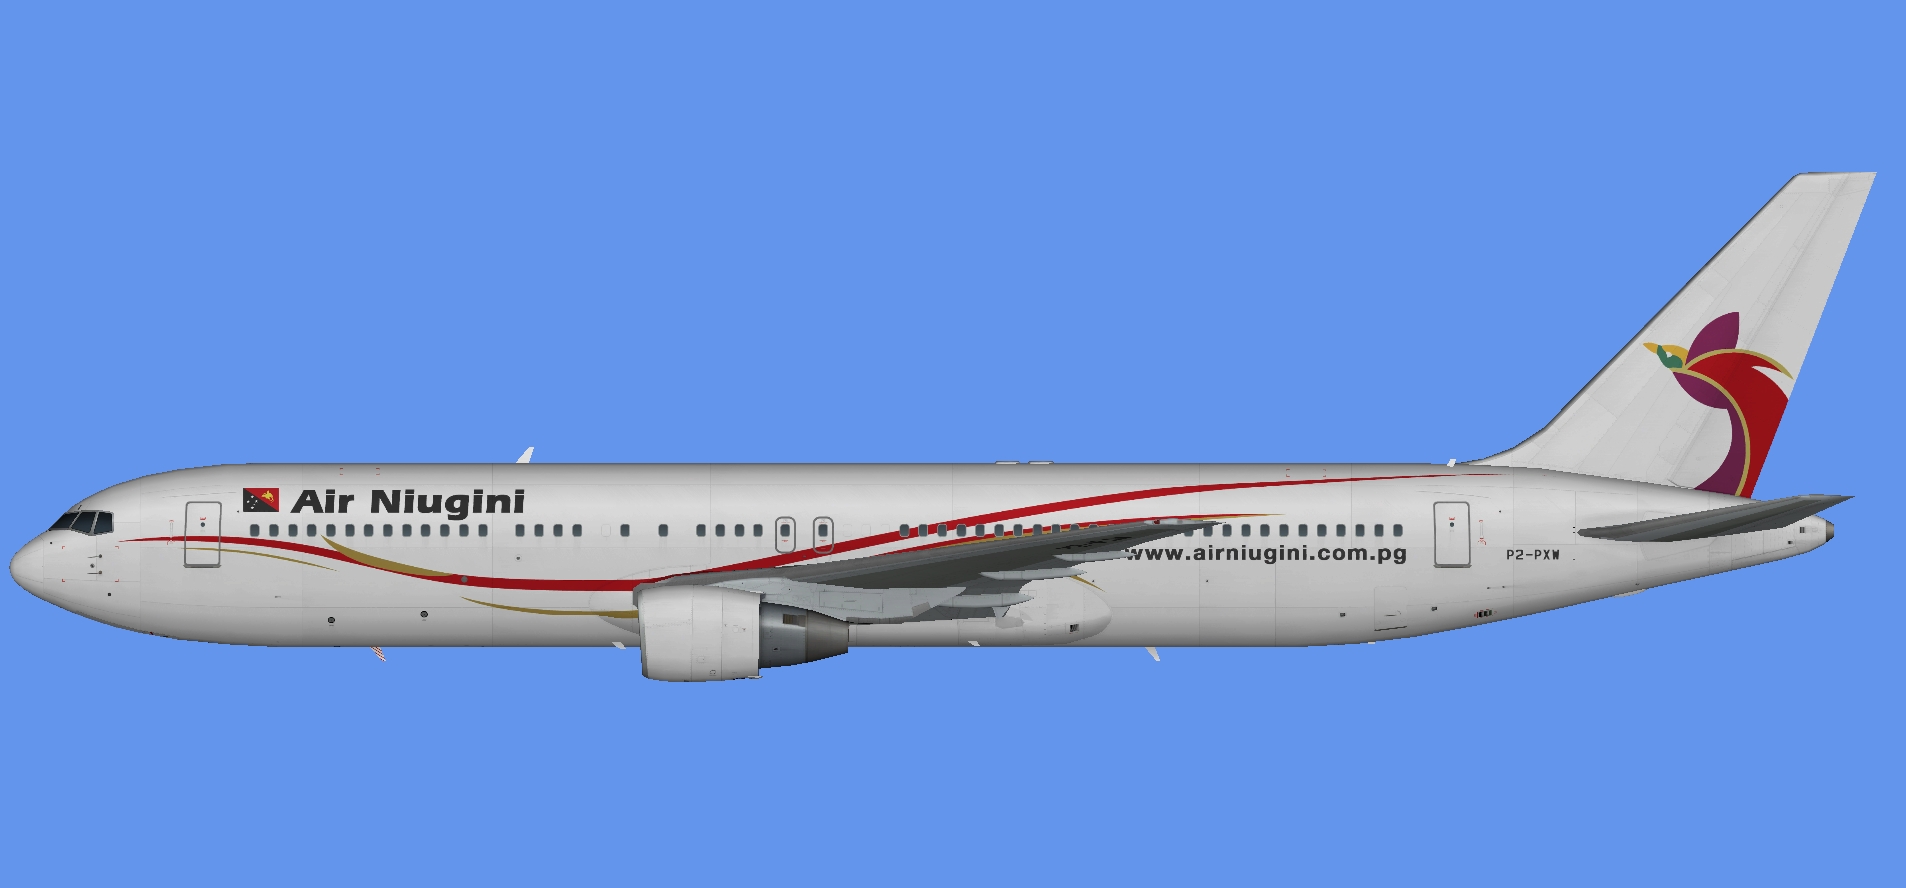 Air Niugini 767-300 PW